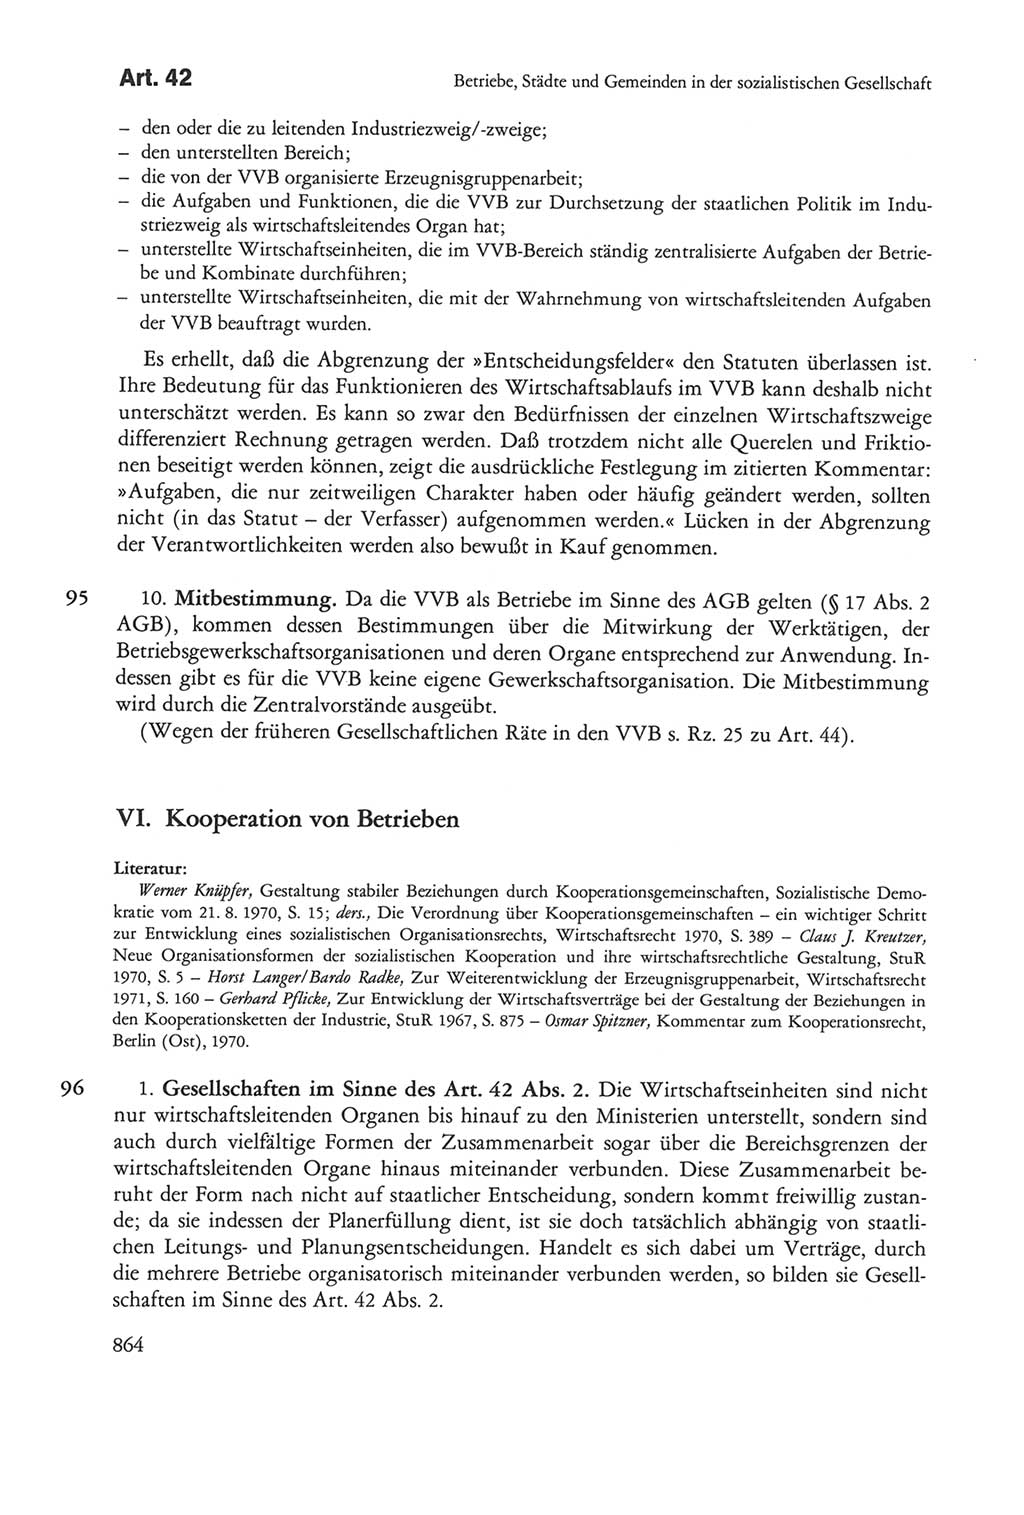 Die sozialistische Verfassung der Deutschen Demokratischen Republik (DDR), Kommentar mit einem Nachtrag 1997, Seite 864 (Soz. Verf. DDR Komm. Nachtr. 1997, S. 864)